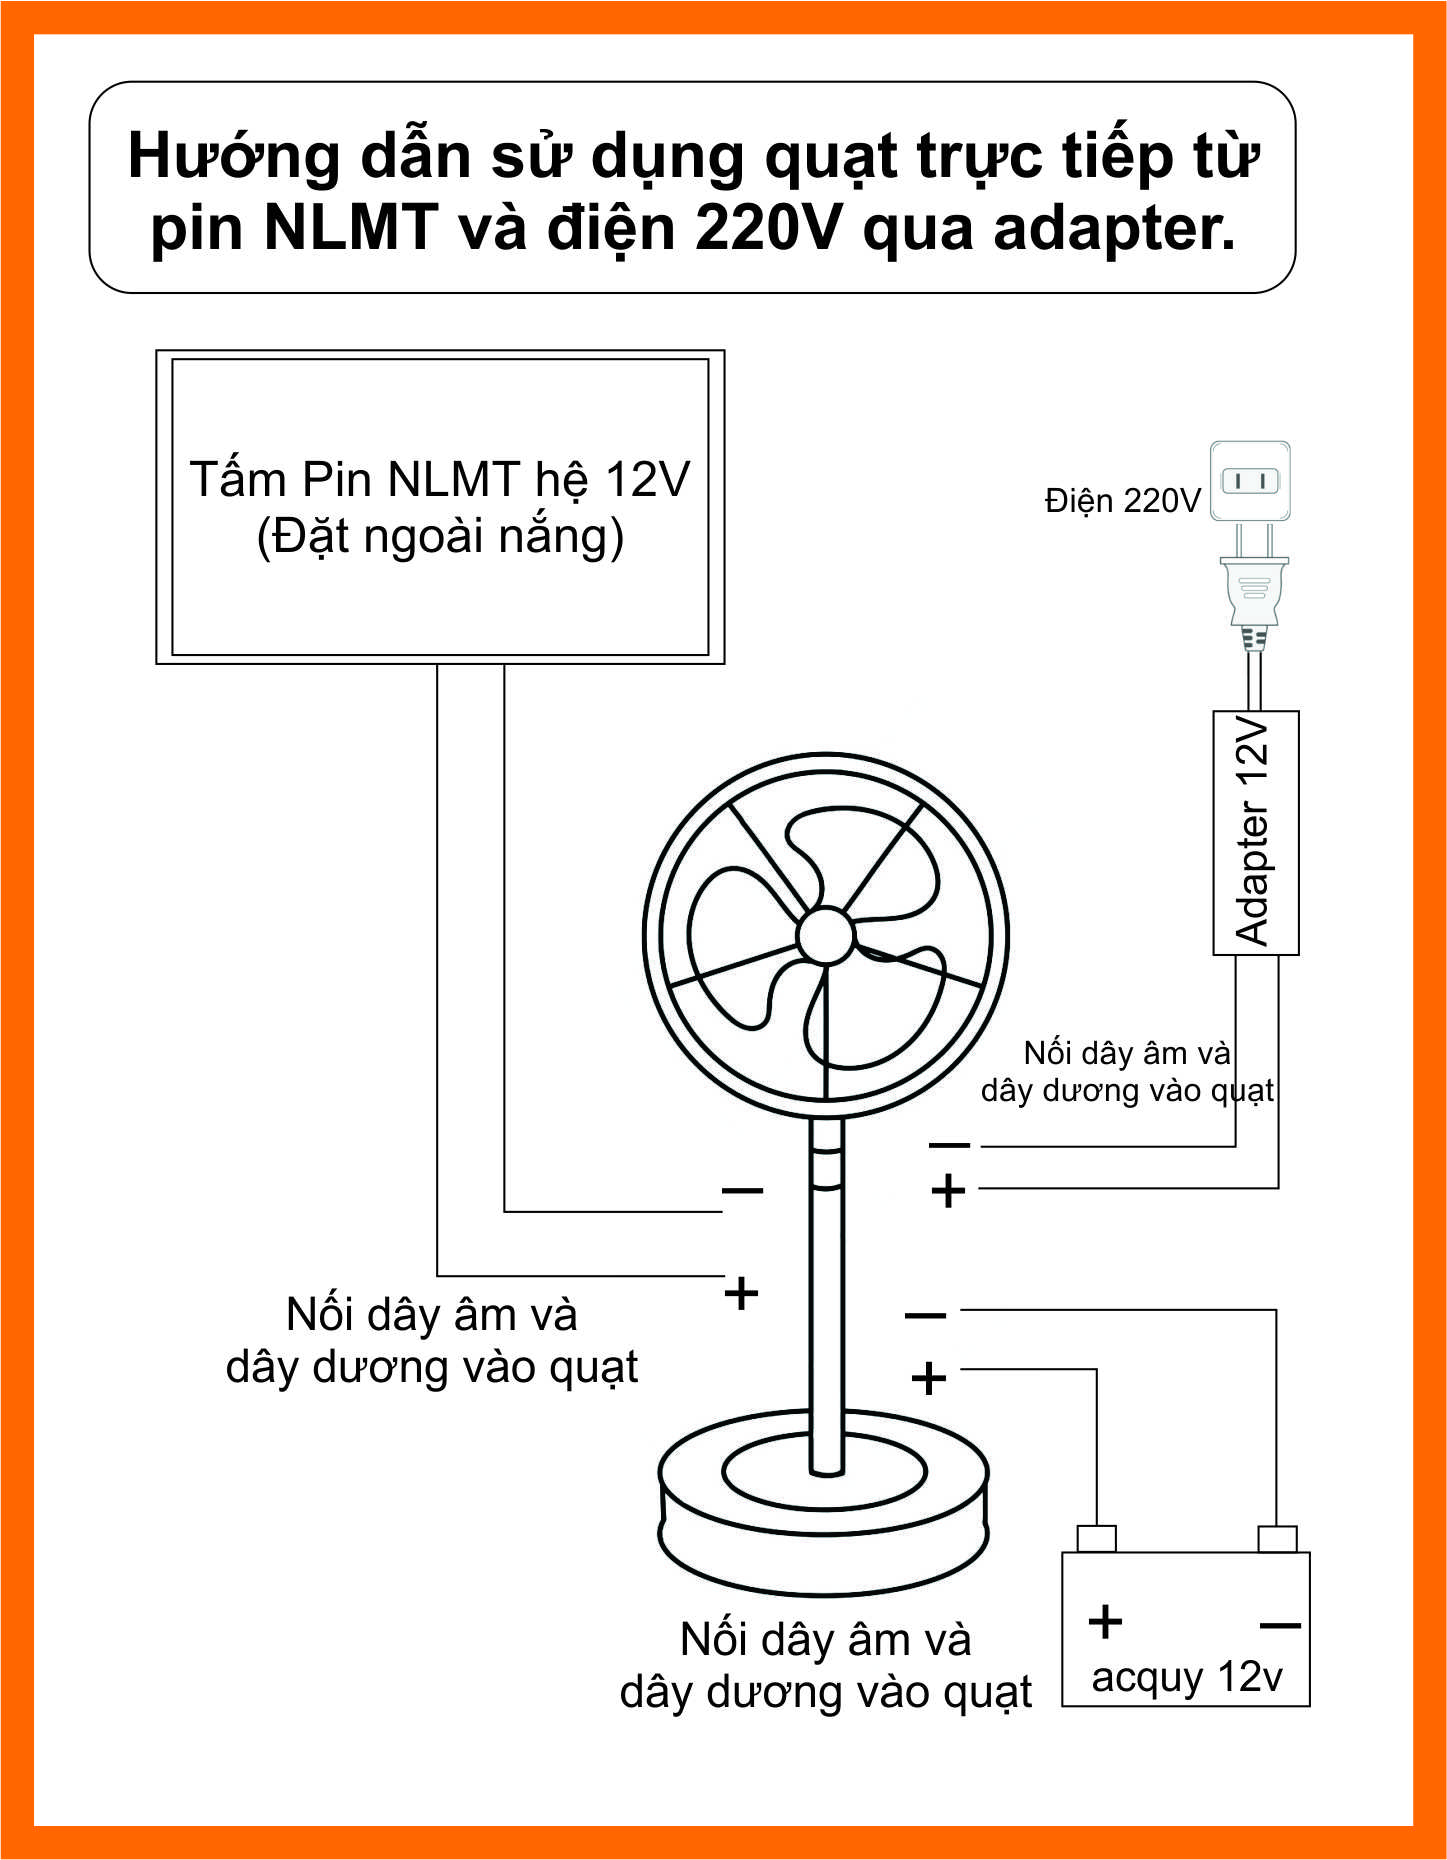 Quạt Sạc Quạt Tích Điện 4 Trong 1. Sử Dụng Pin Rời+Điện 220V+Bình 12V+Pin NLMT.